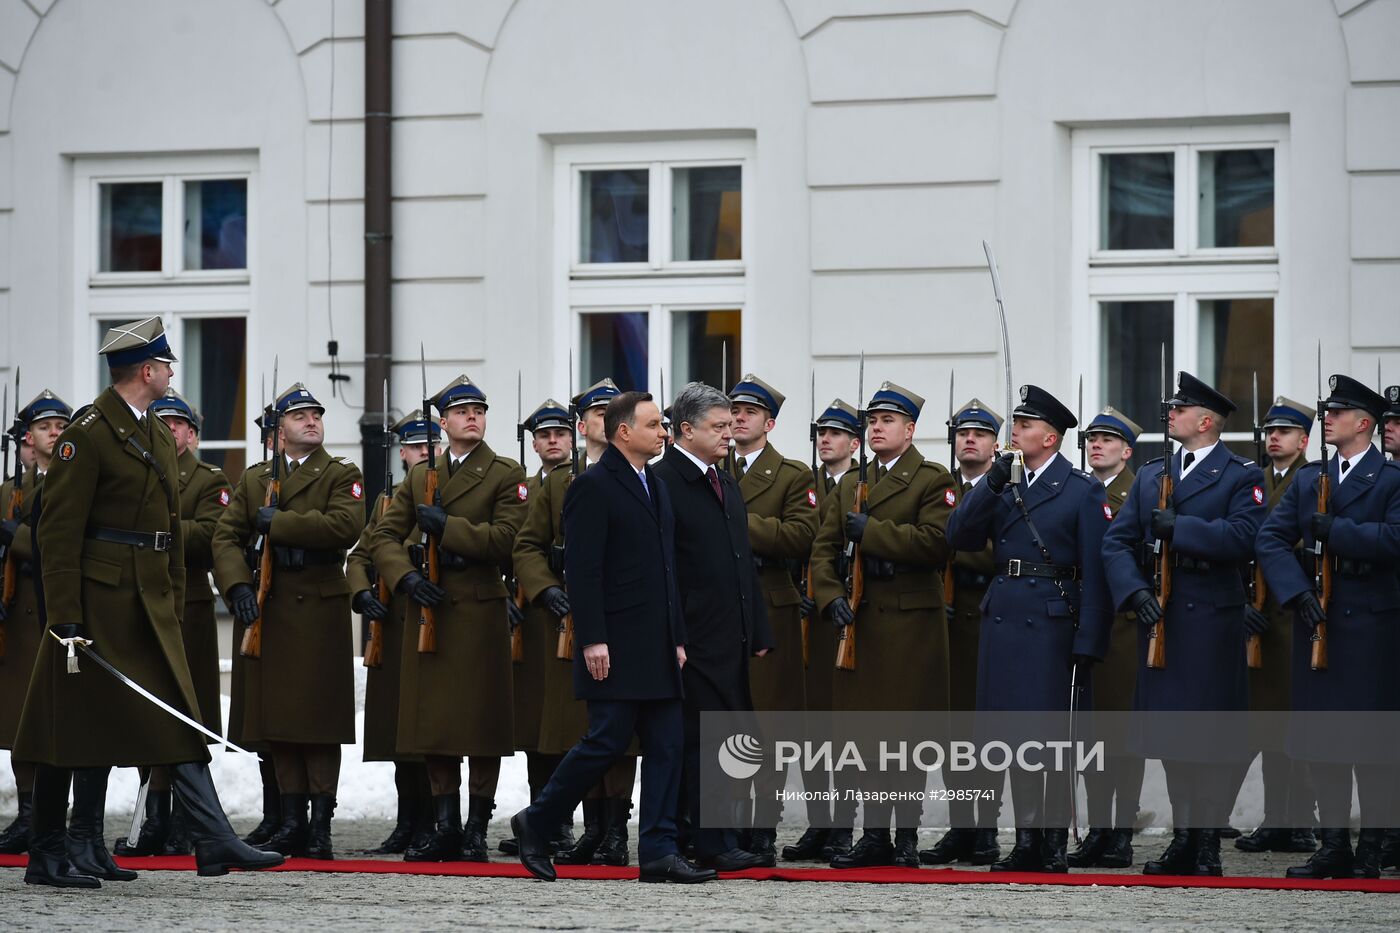 Визит президента Украины Петра Порошенко в Польшу